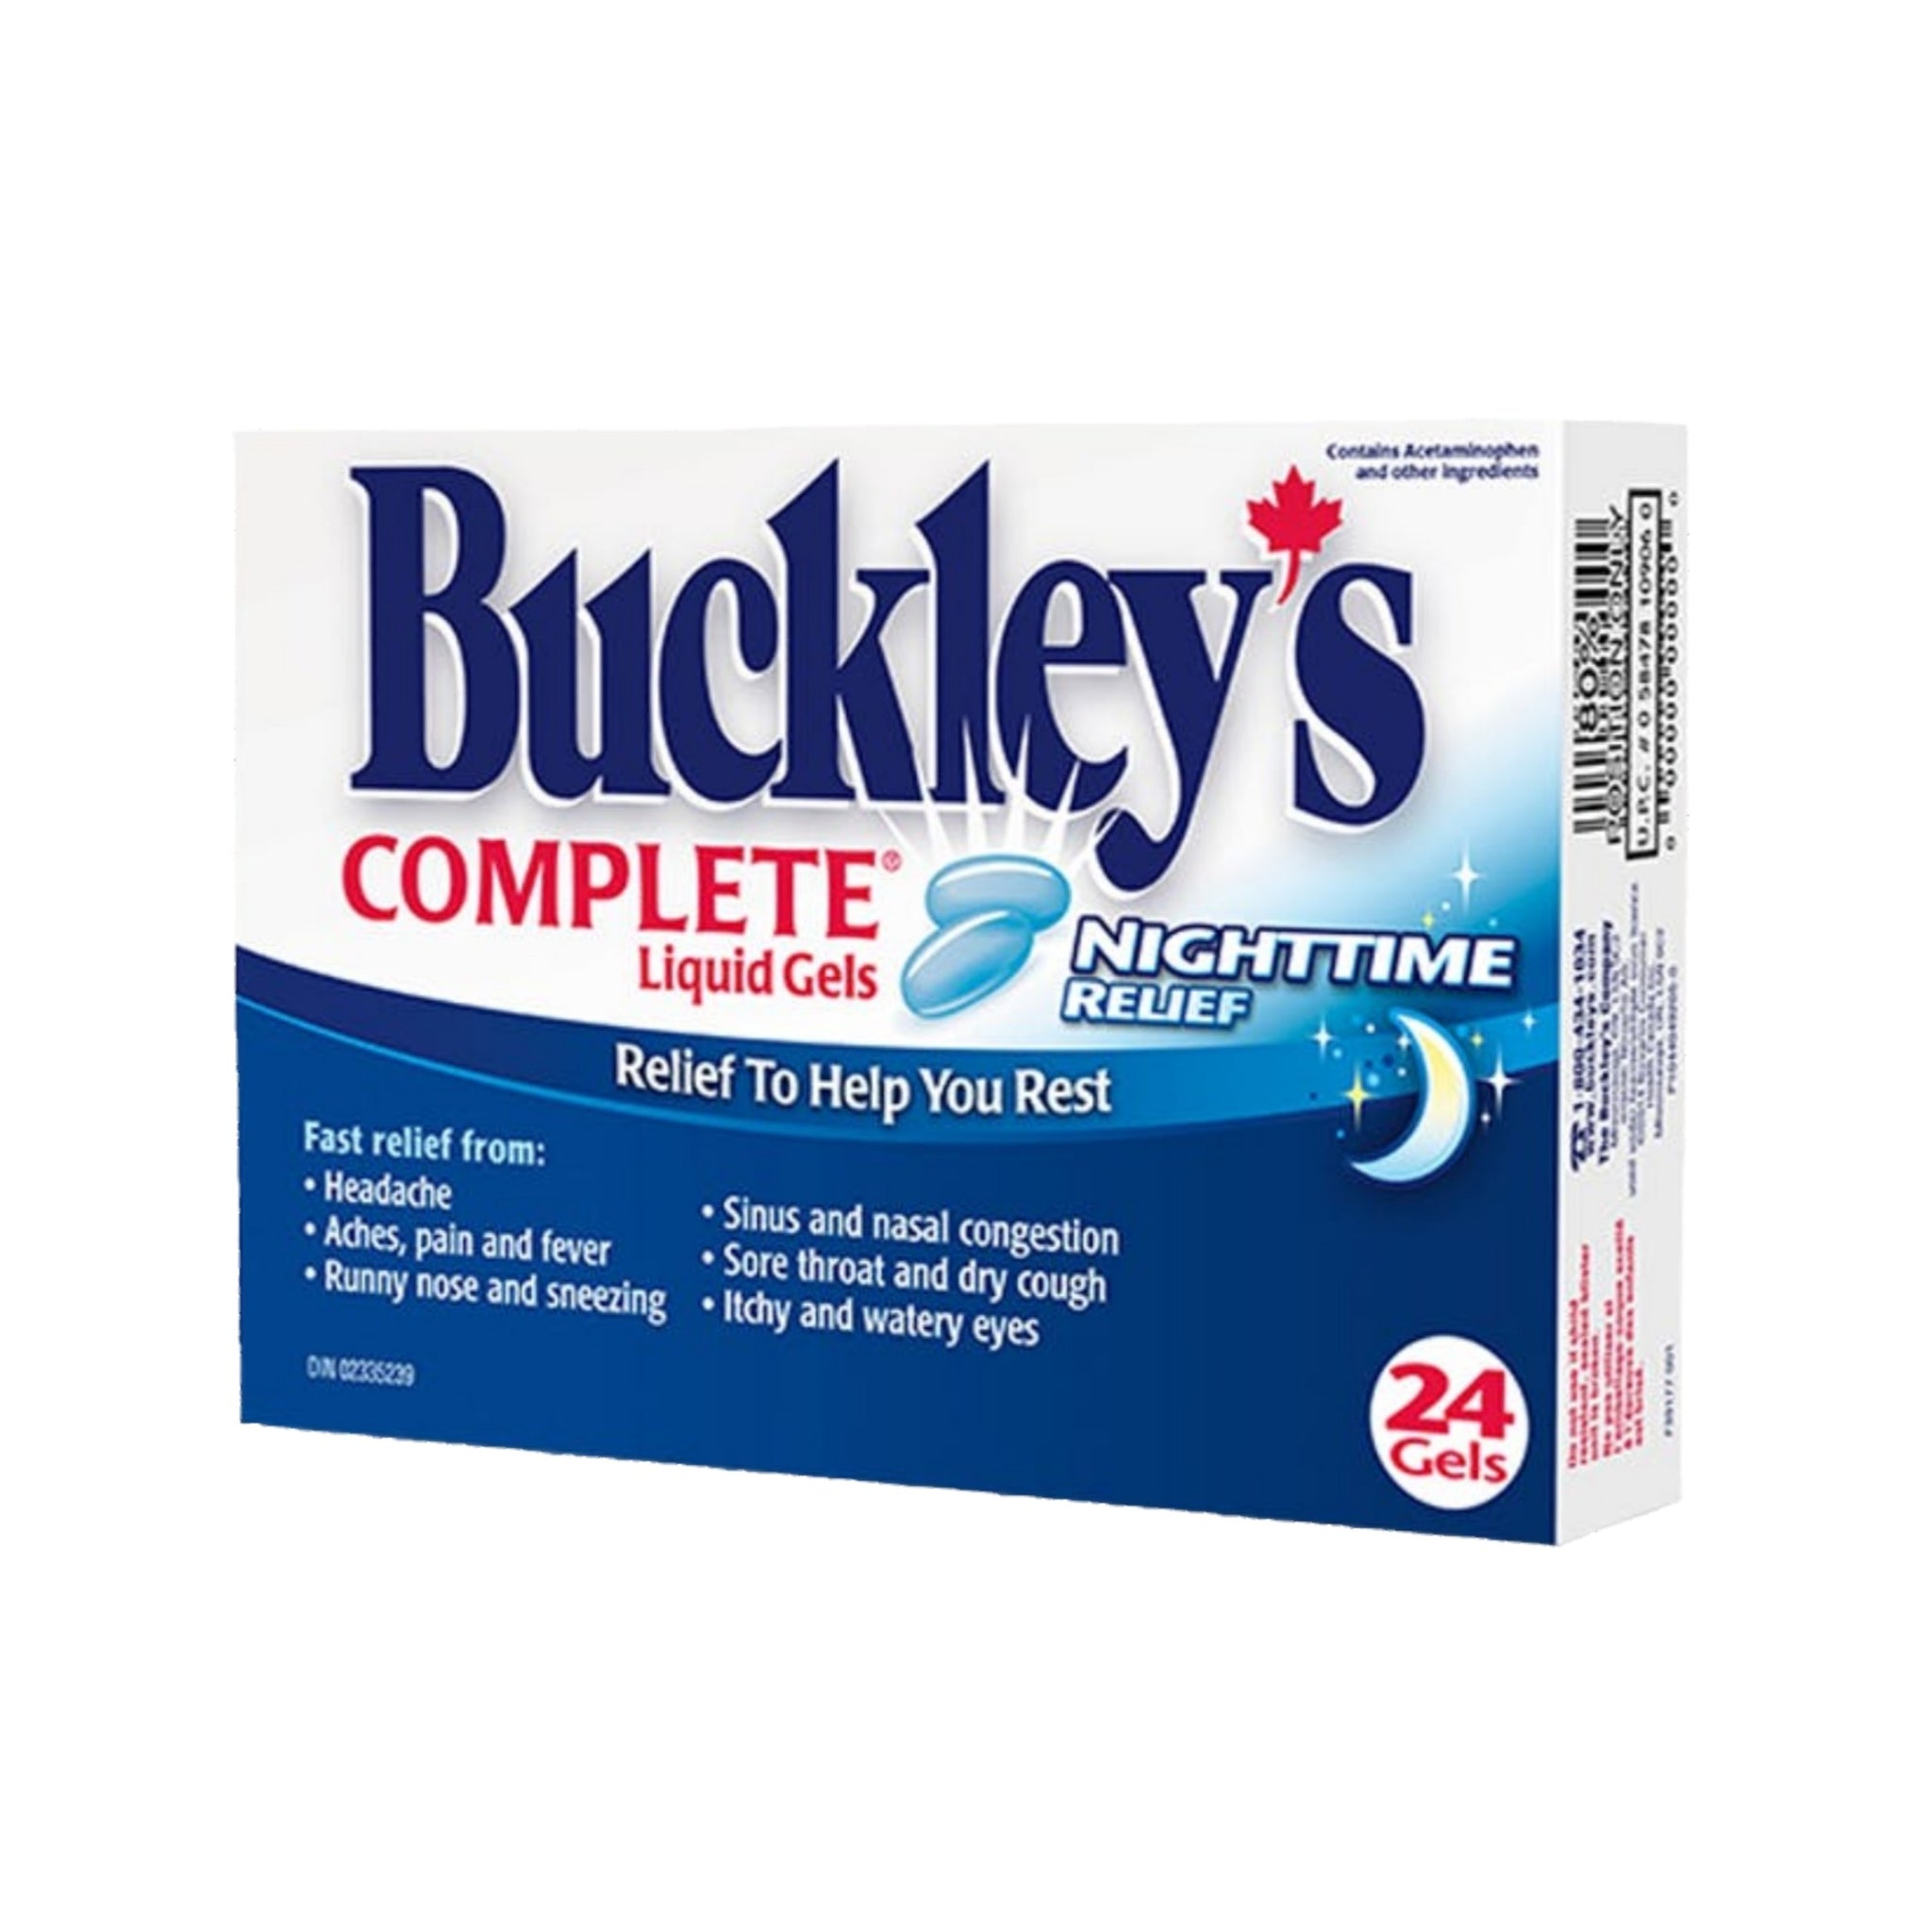 Buckley's Complete Liquid Gels Nighttime Relief 24 Gels